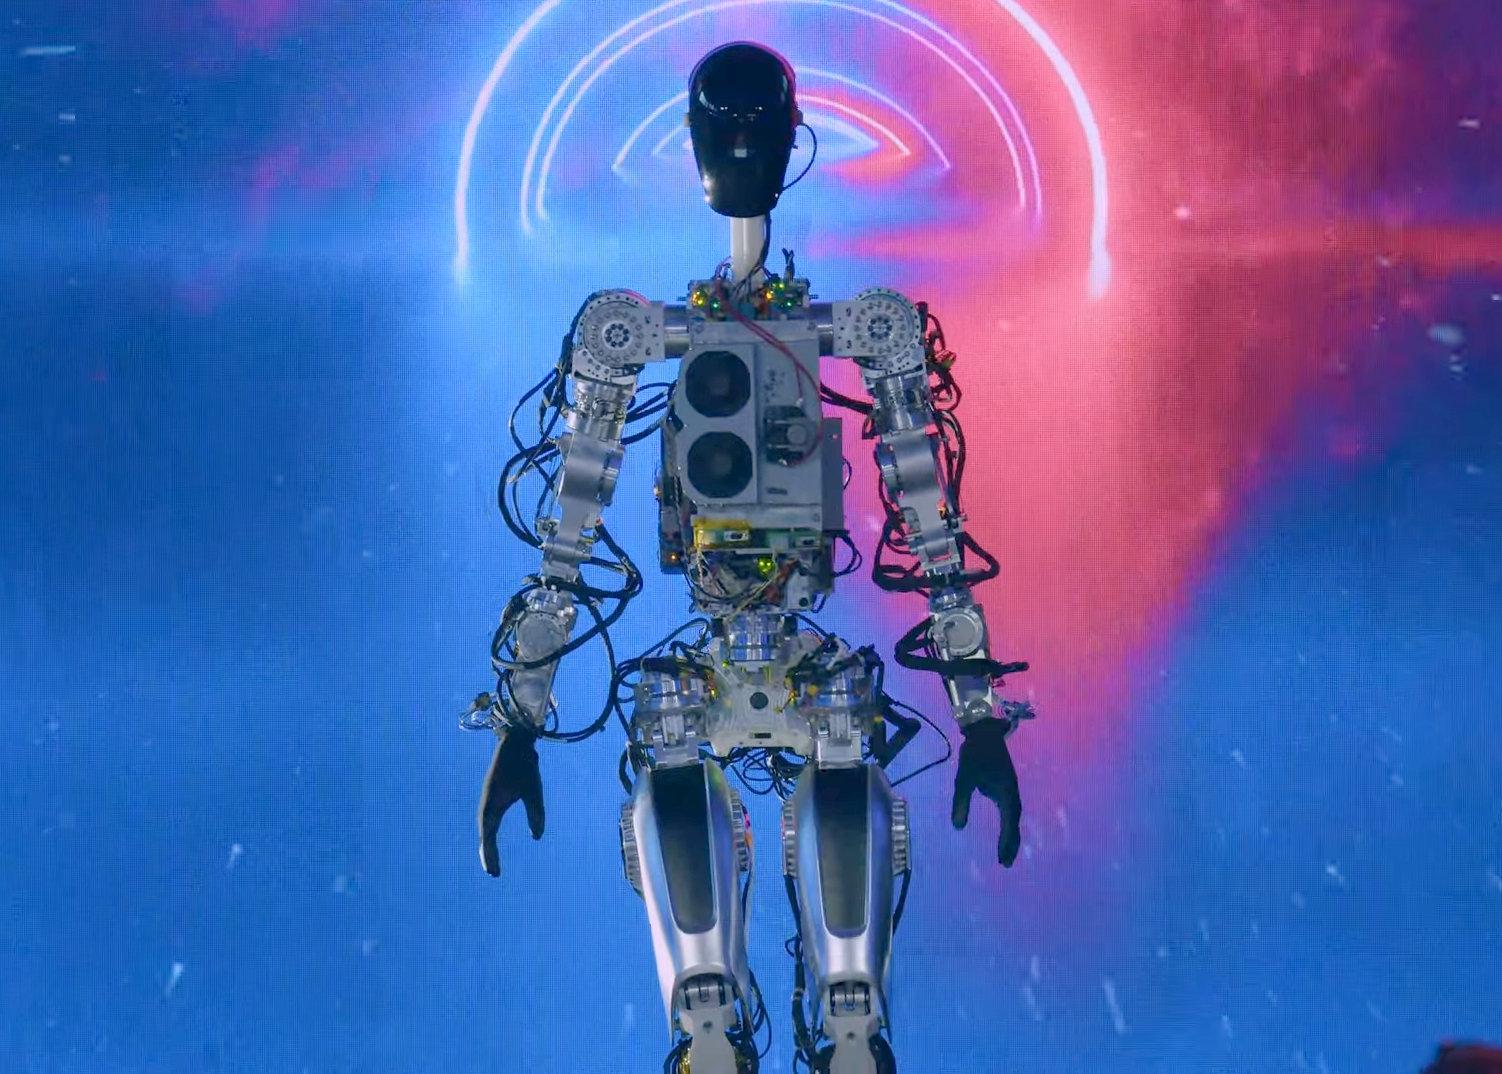 temet-kedvezm-nyezett-vezet-k-pess-g-bot-robot-meaning-por-retts-gi